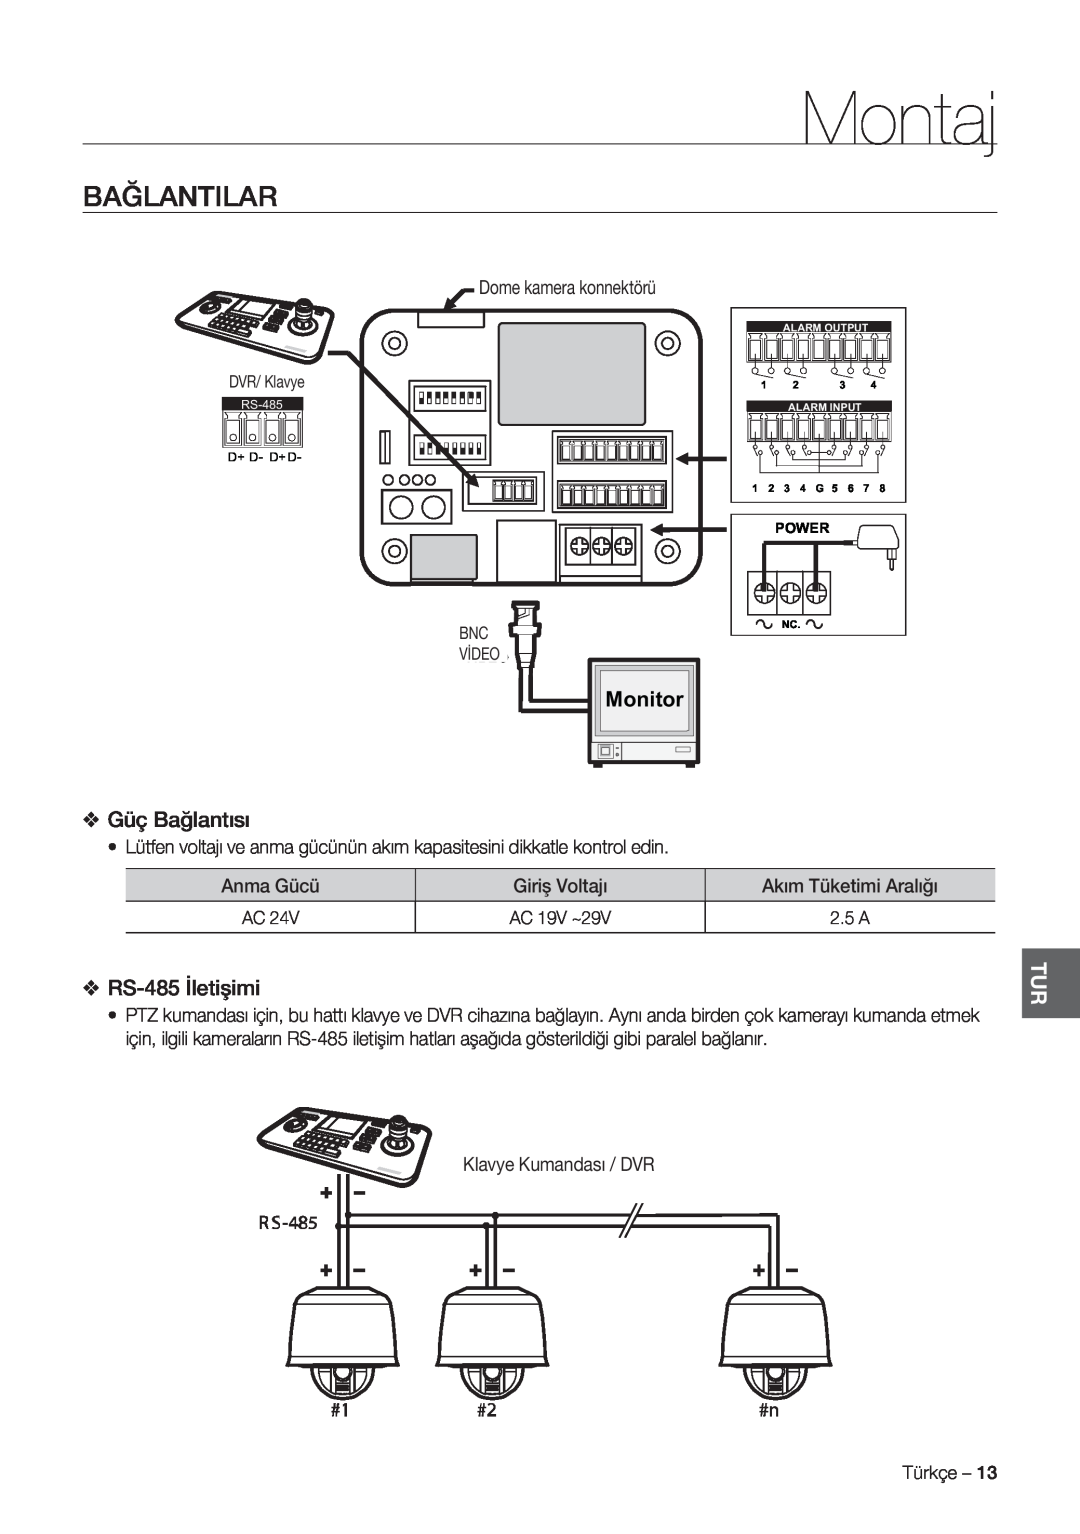 Samsung SCC-C7478P manual Bağlantilar, Güç Bağlantısı, RS-485 İletişimi, Montaj, Monitor 